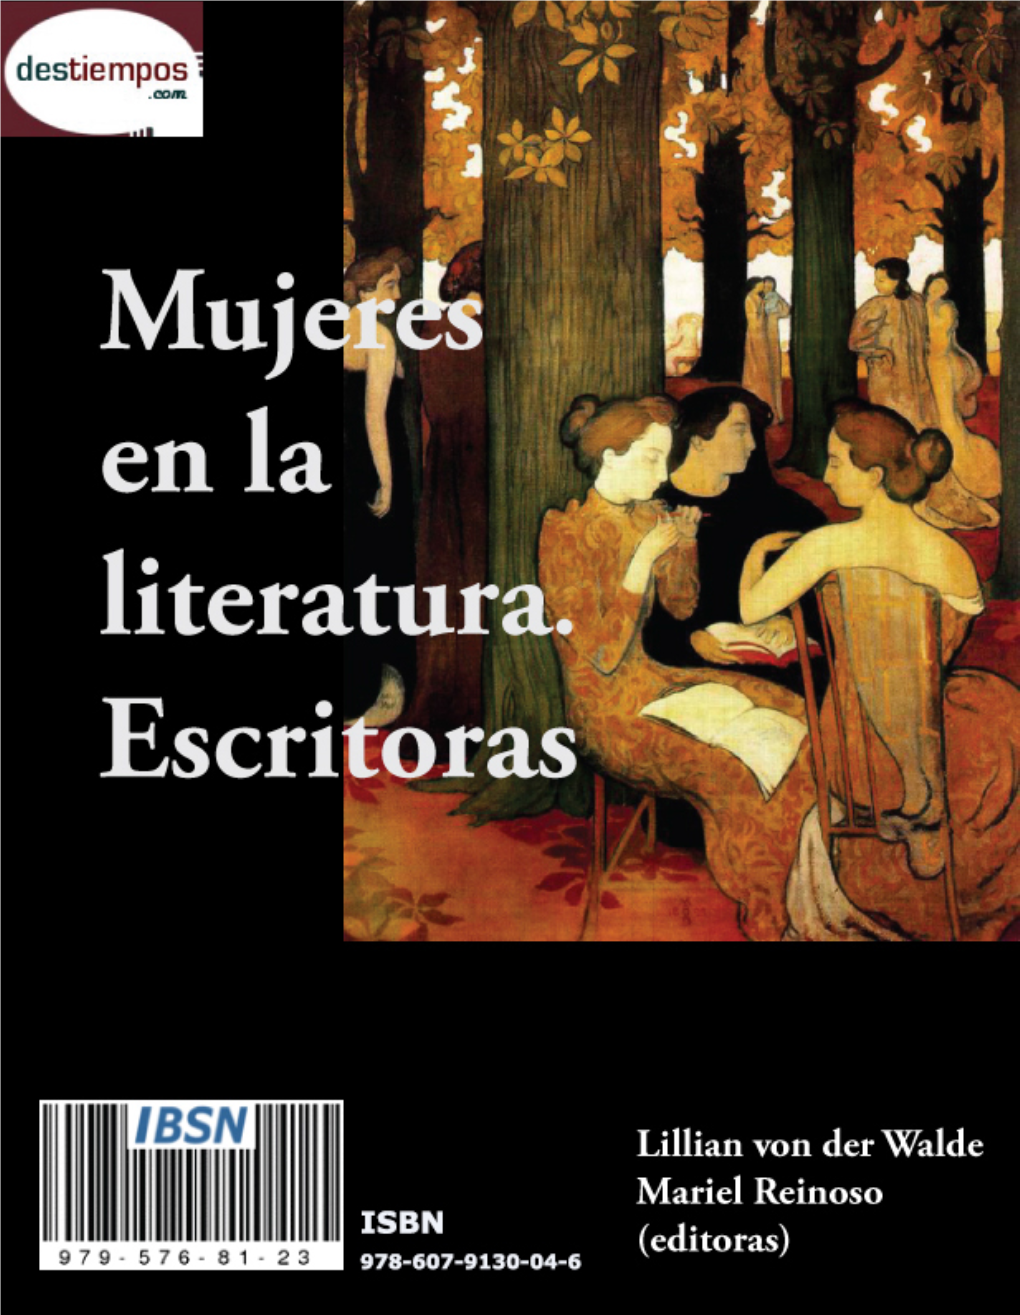 Mujeres En La Literatura. Escritoras: Ibsn 979 576 81 23 Isbn 978-607-9130-04-6